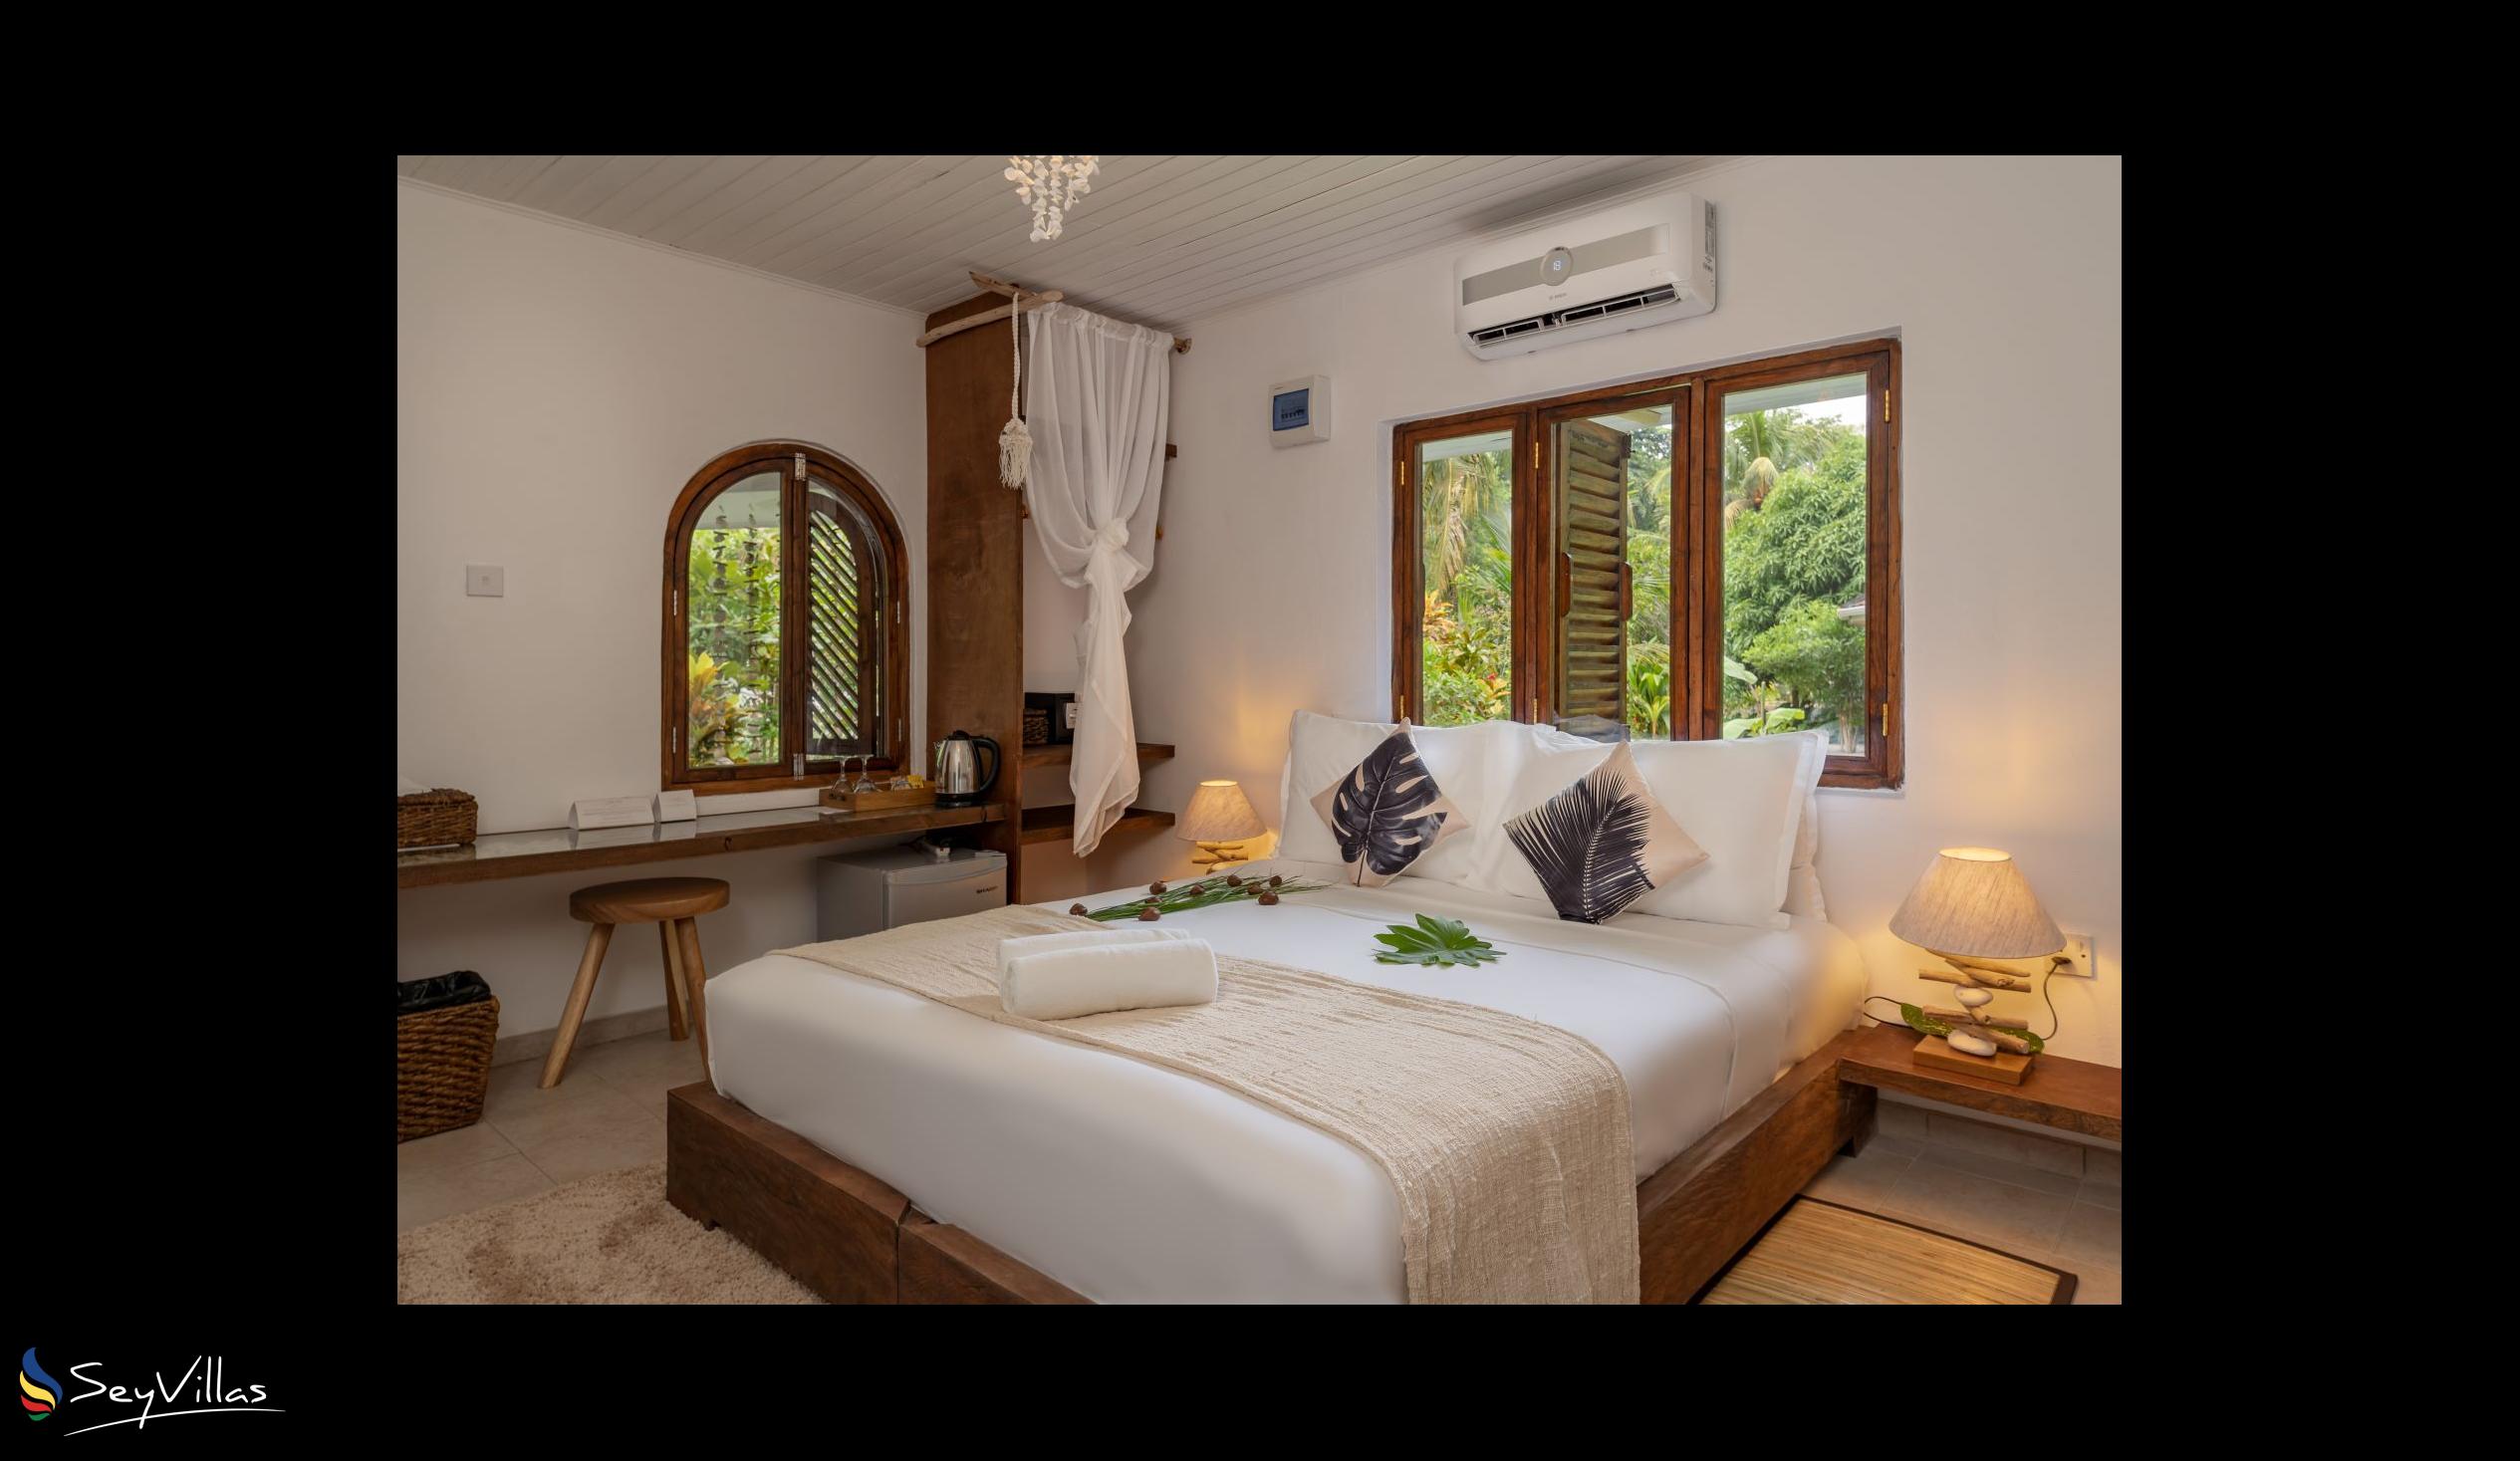 Photo 42: Bliss Hotel Praslin - Eden Garden - Family Suite - Praslin (Seychelles)